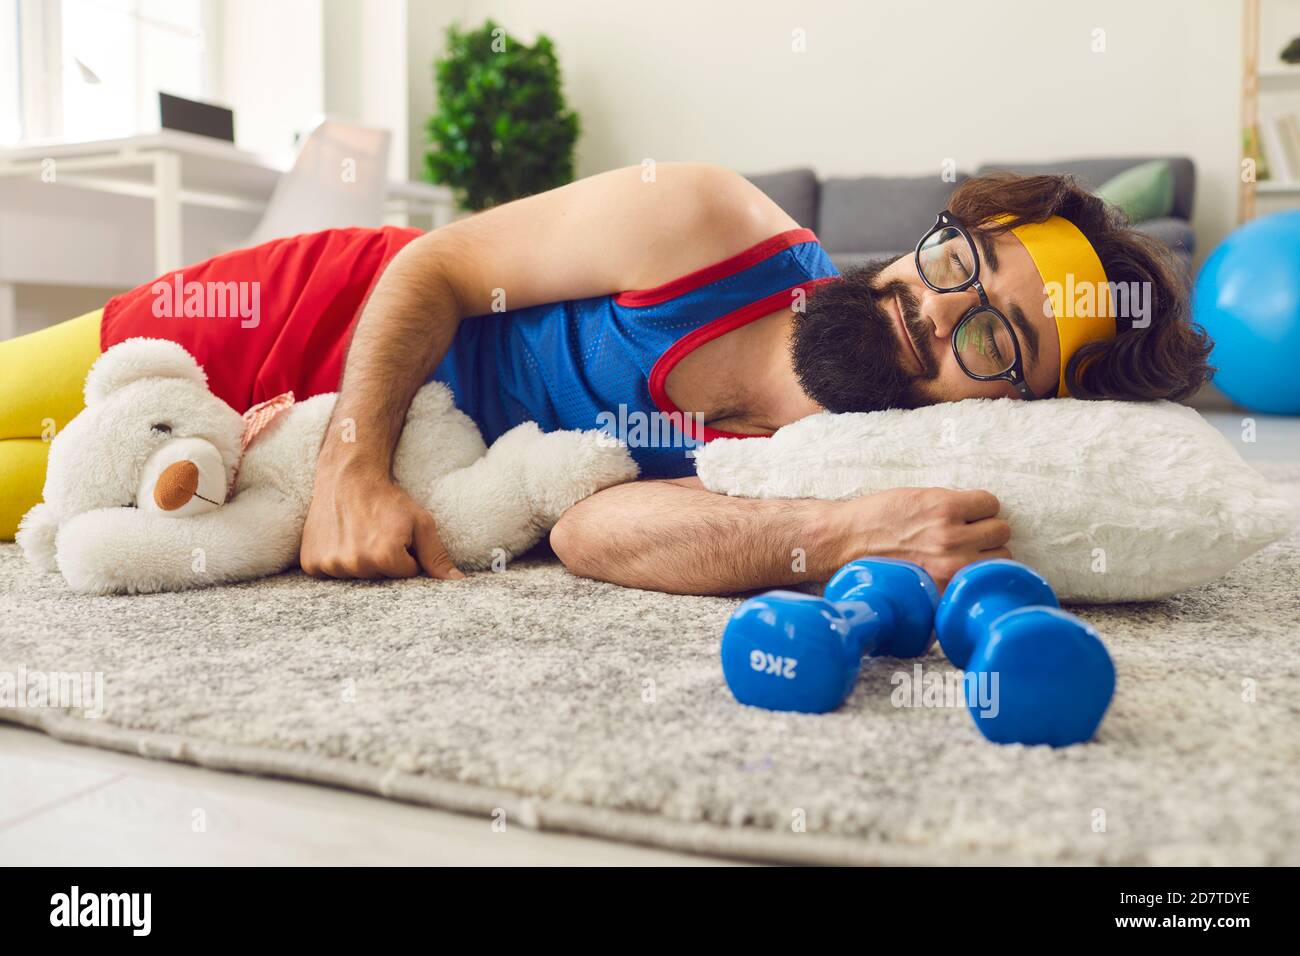 Lustige lächelnde Mann in hellen bunten Sportbekleidung schlafen auf Teppich Mit Spielzeug während des sportlichen Trainings Stockfoto